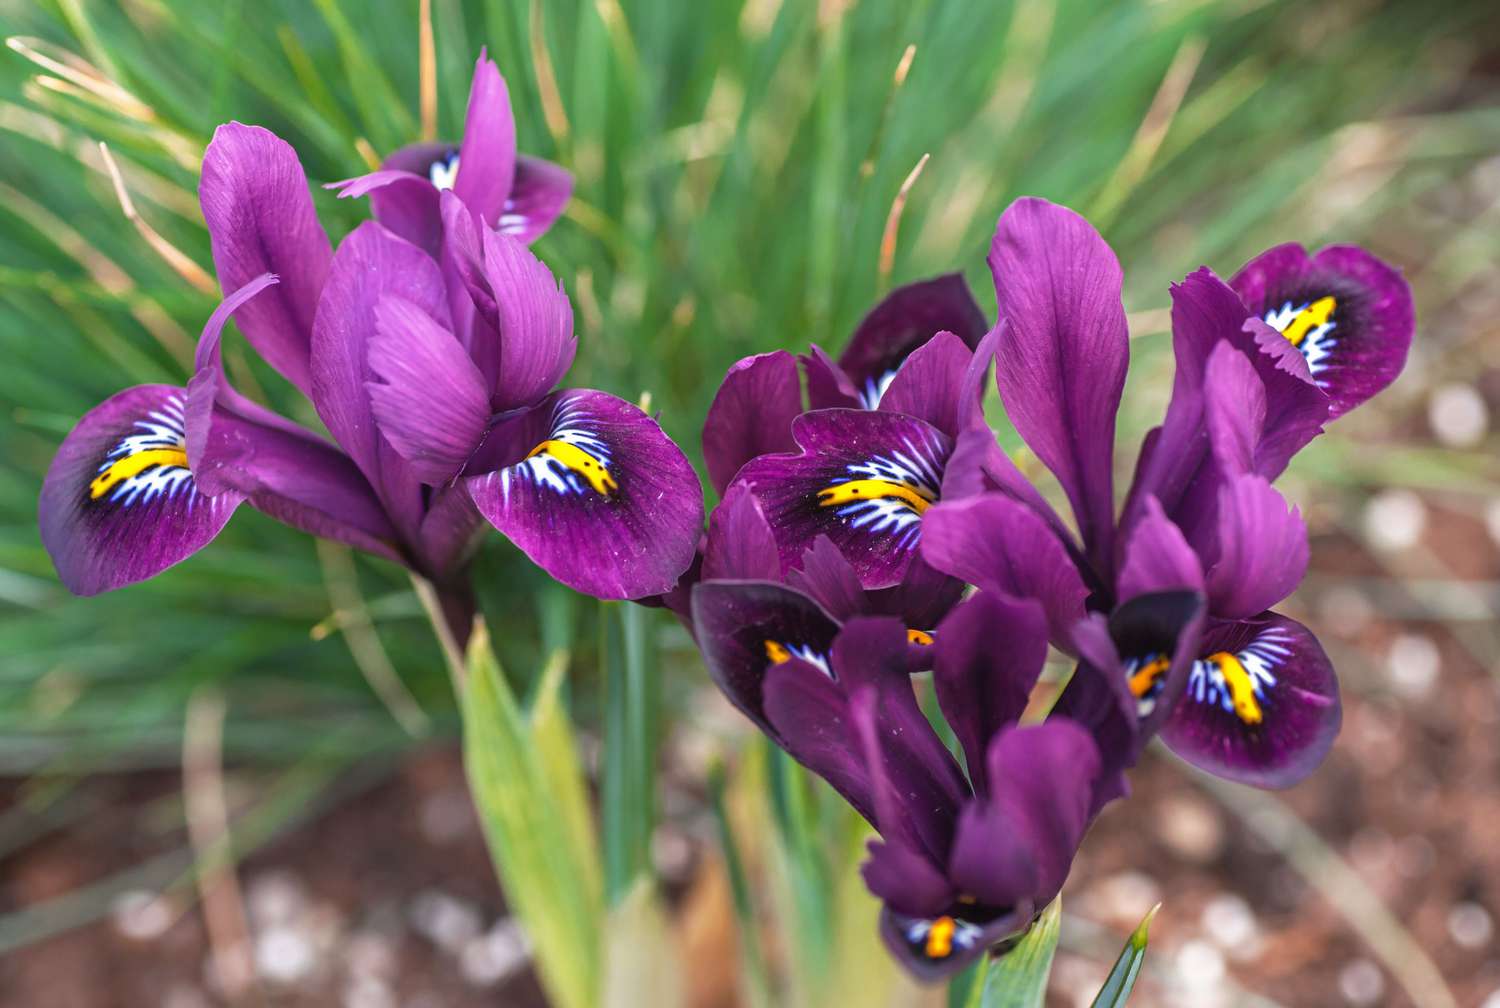 Plante d'iris avec des fleurs pourpre foncé avec des pétales intérieurs jaunes, blancs et noirs